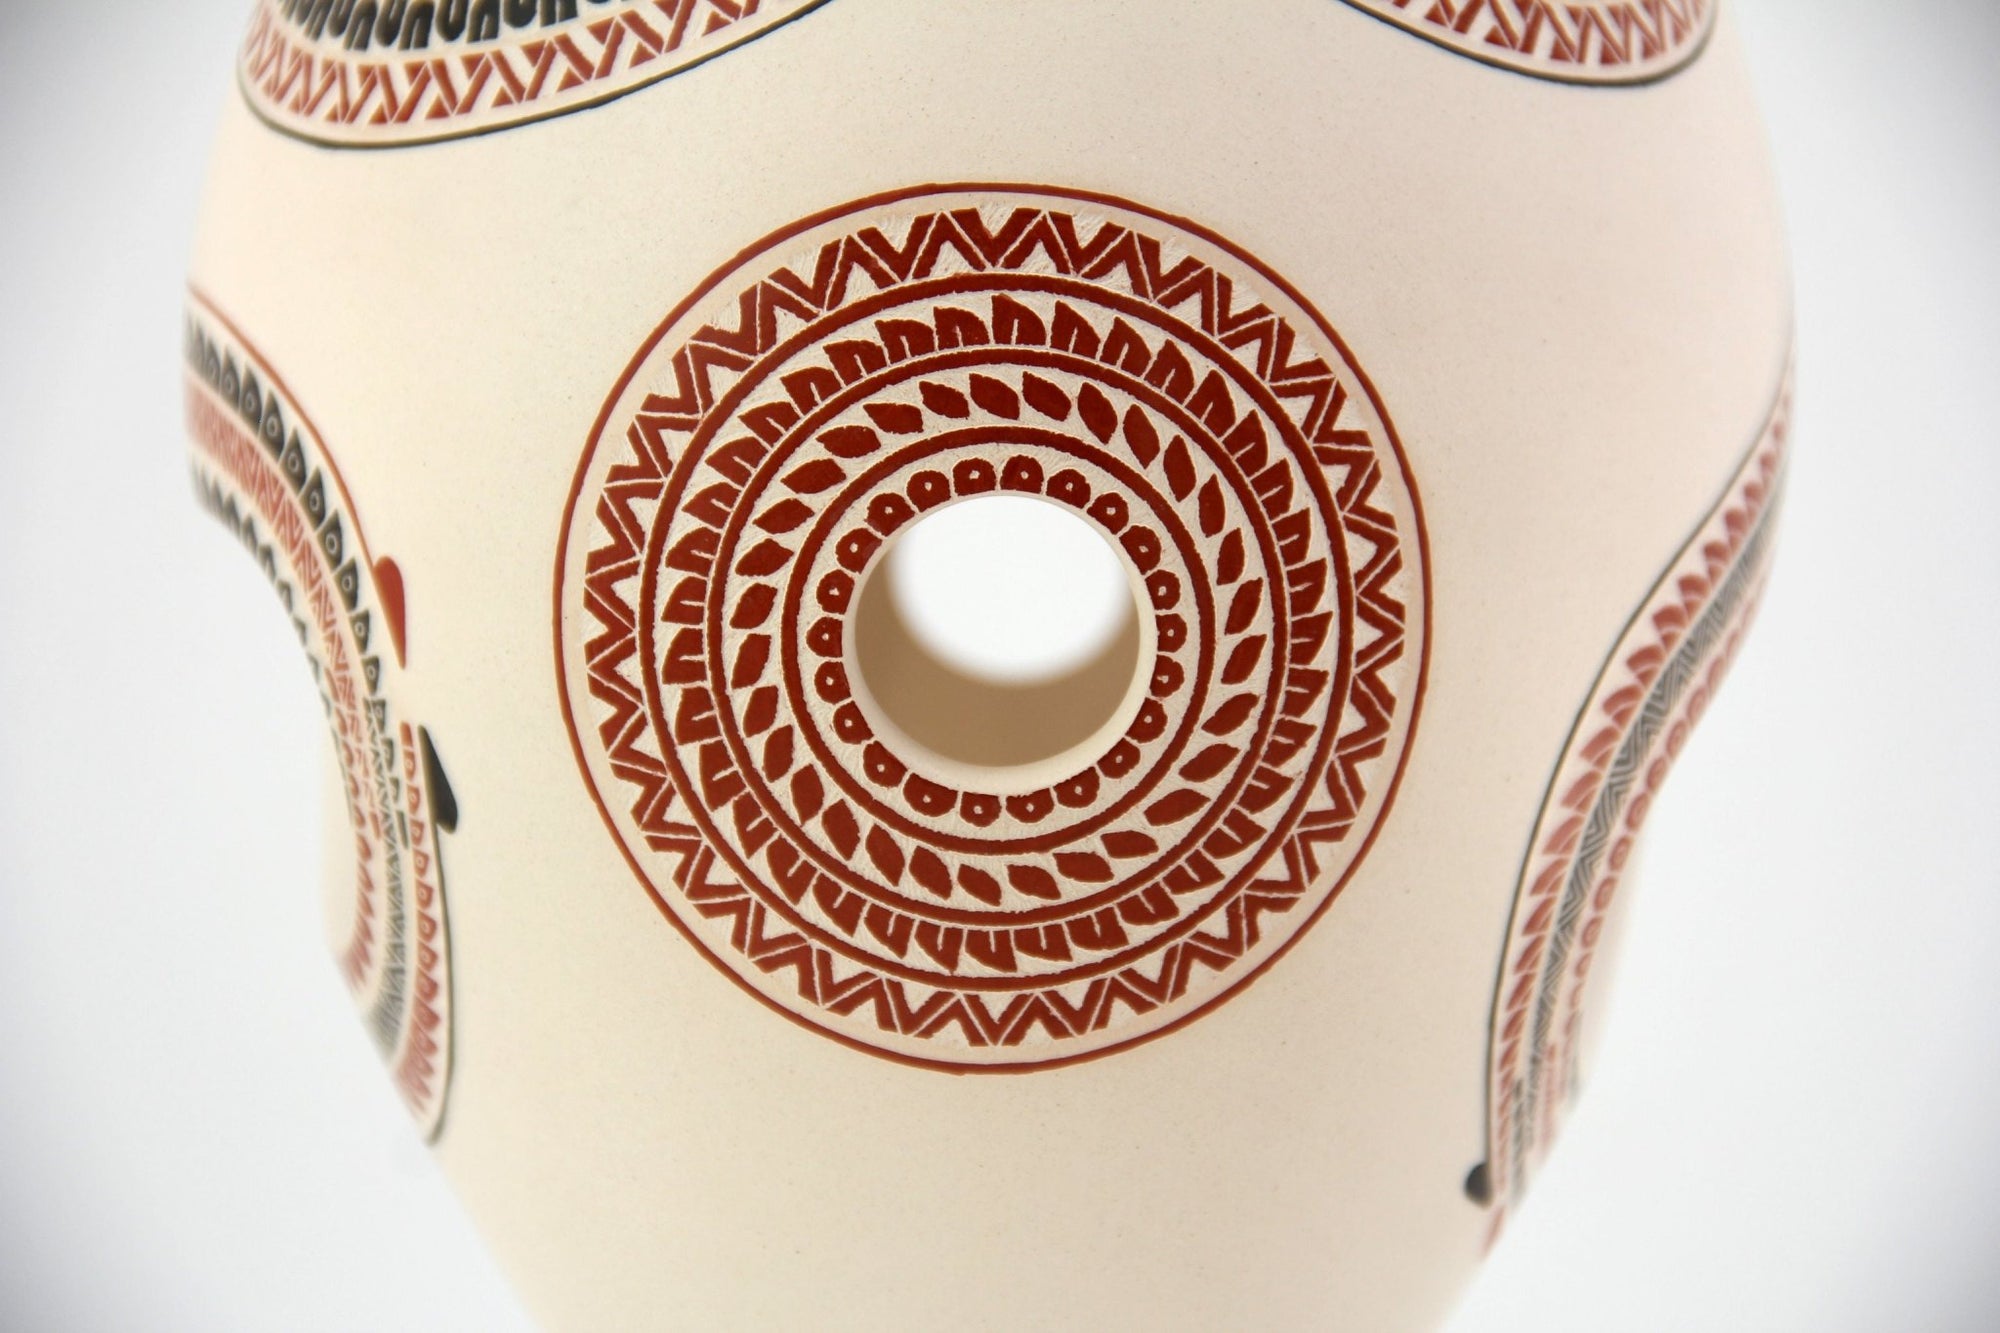 Mata Ortiz Keramik – Tropfen – Huichol-Kunst – Marakame